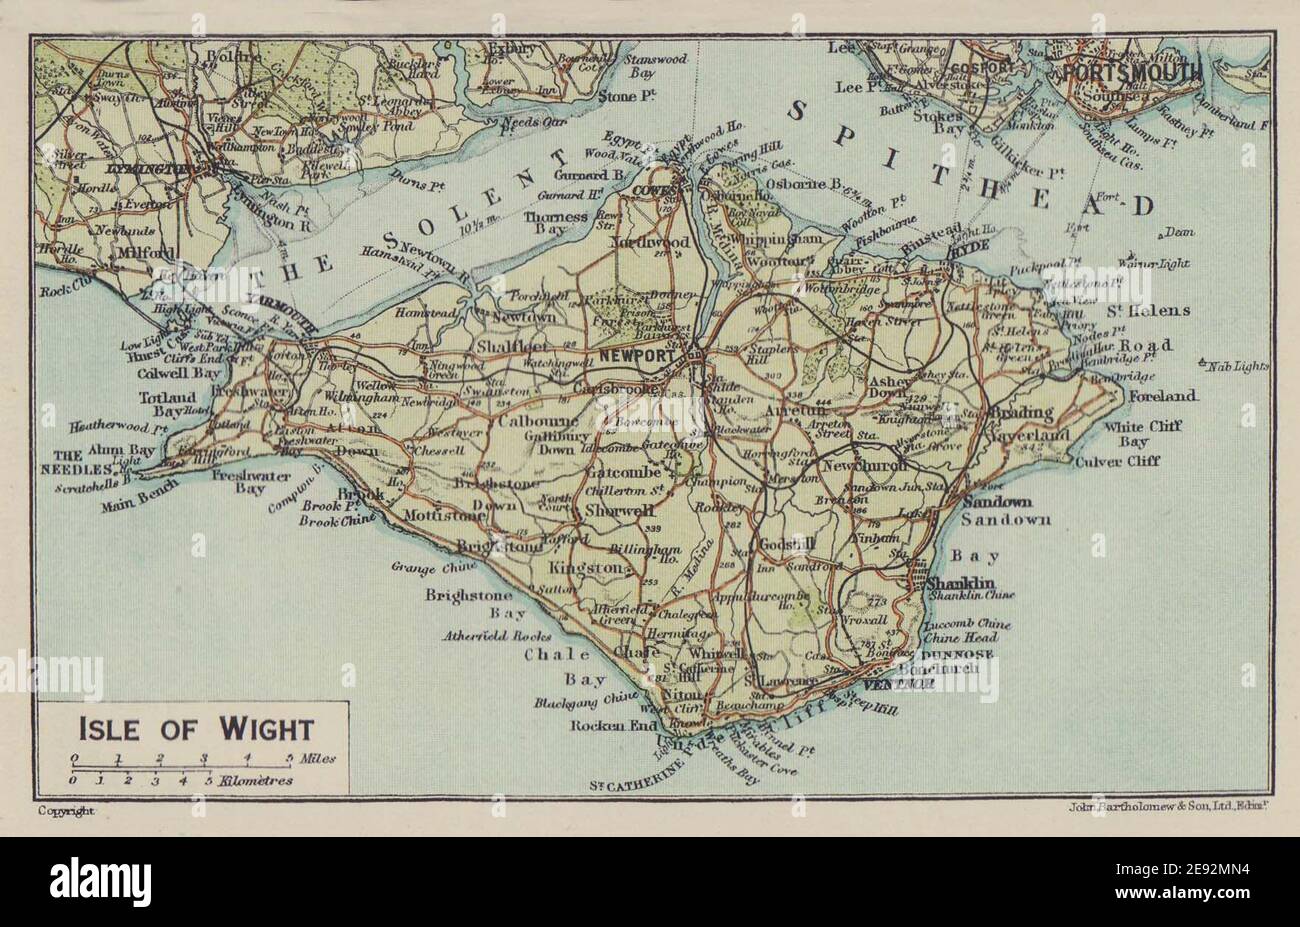 Isle of Wight. Scheint Solent Rail Bridge 1920 alte antike Kartenkarte zu zeigen Stockfoto